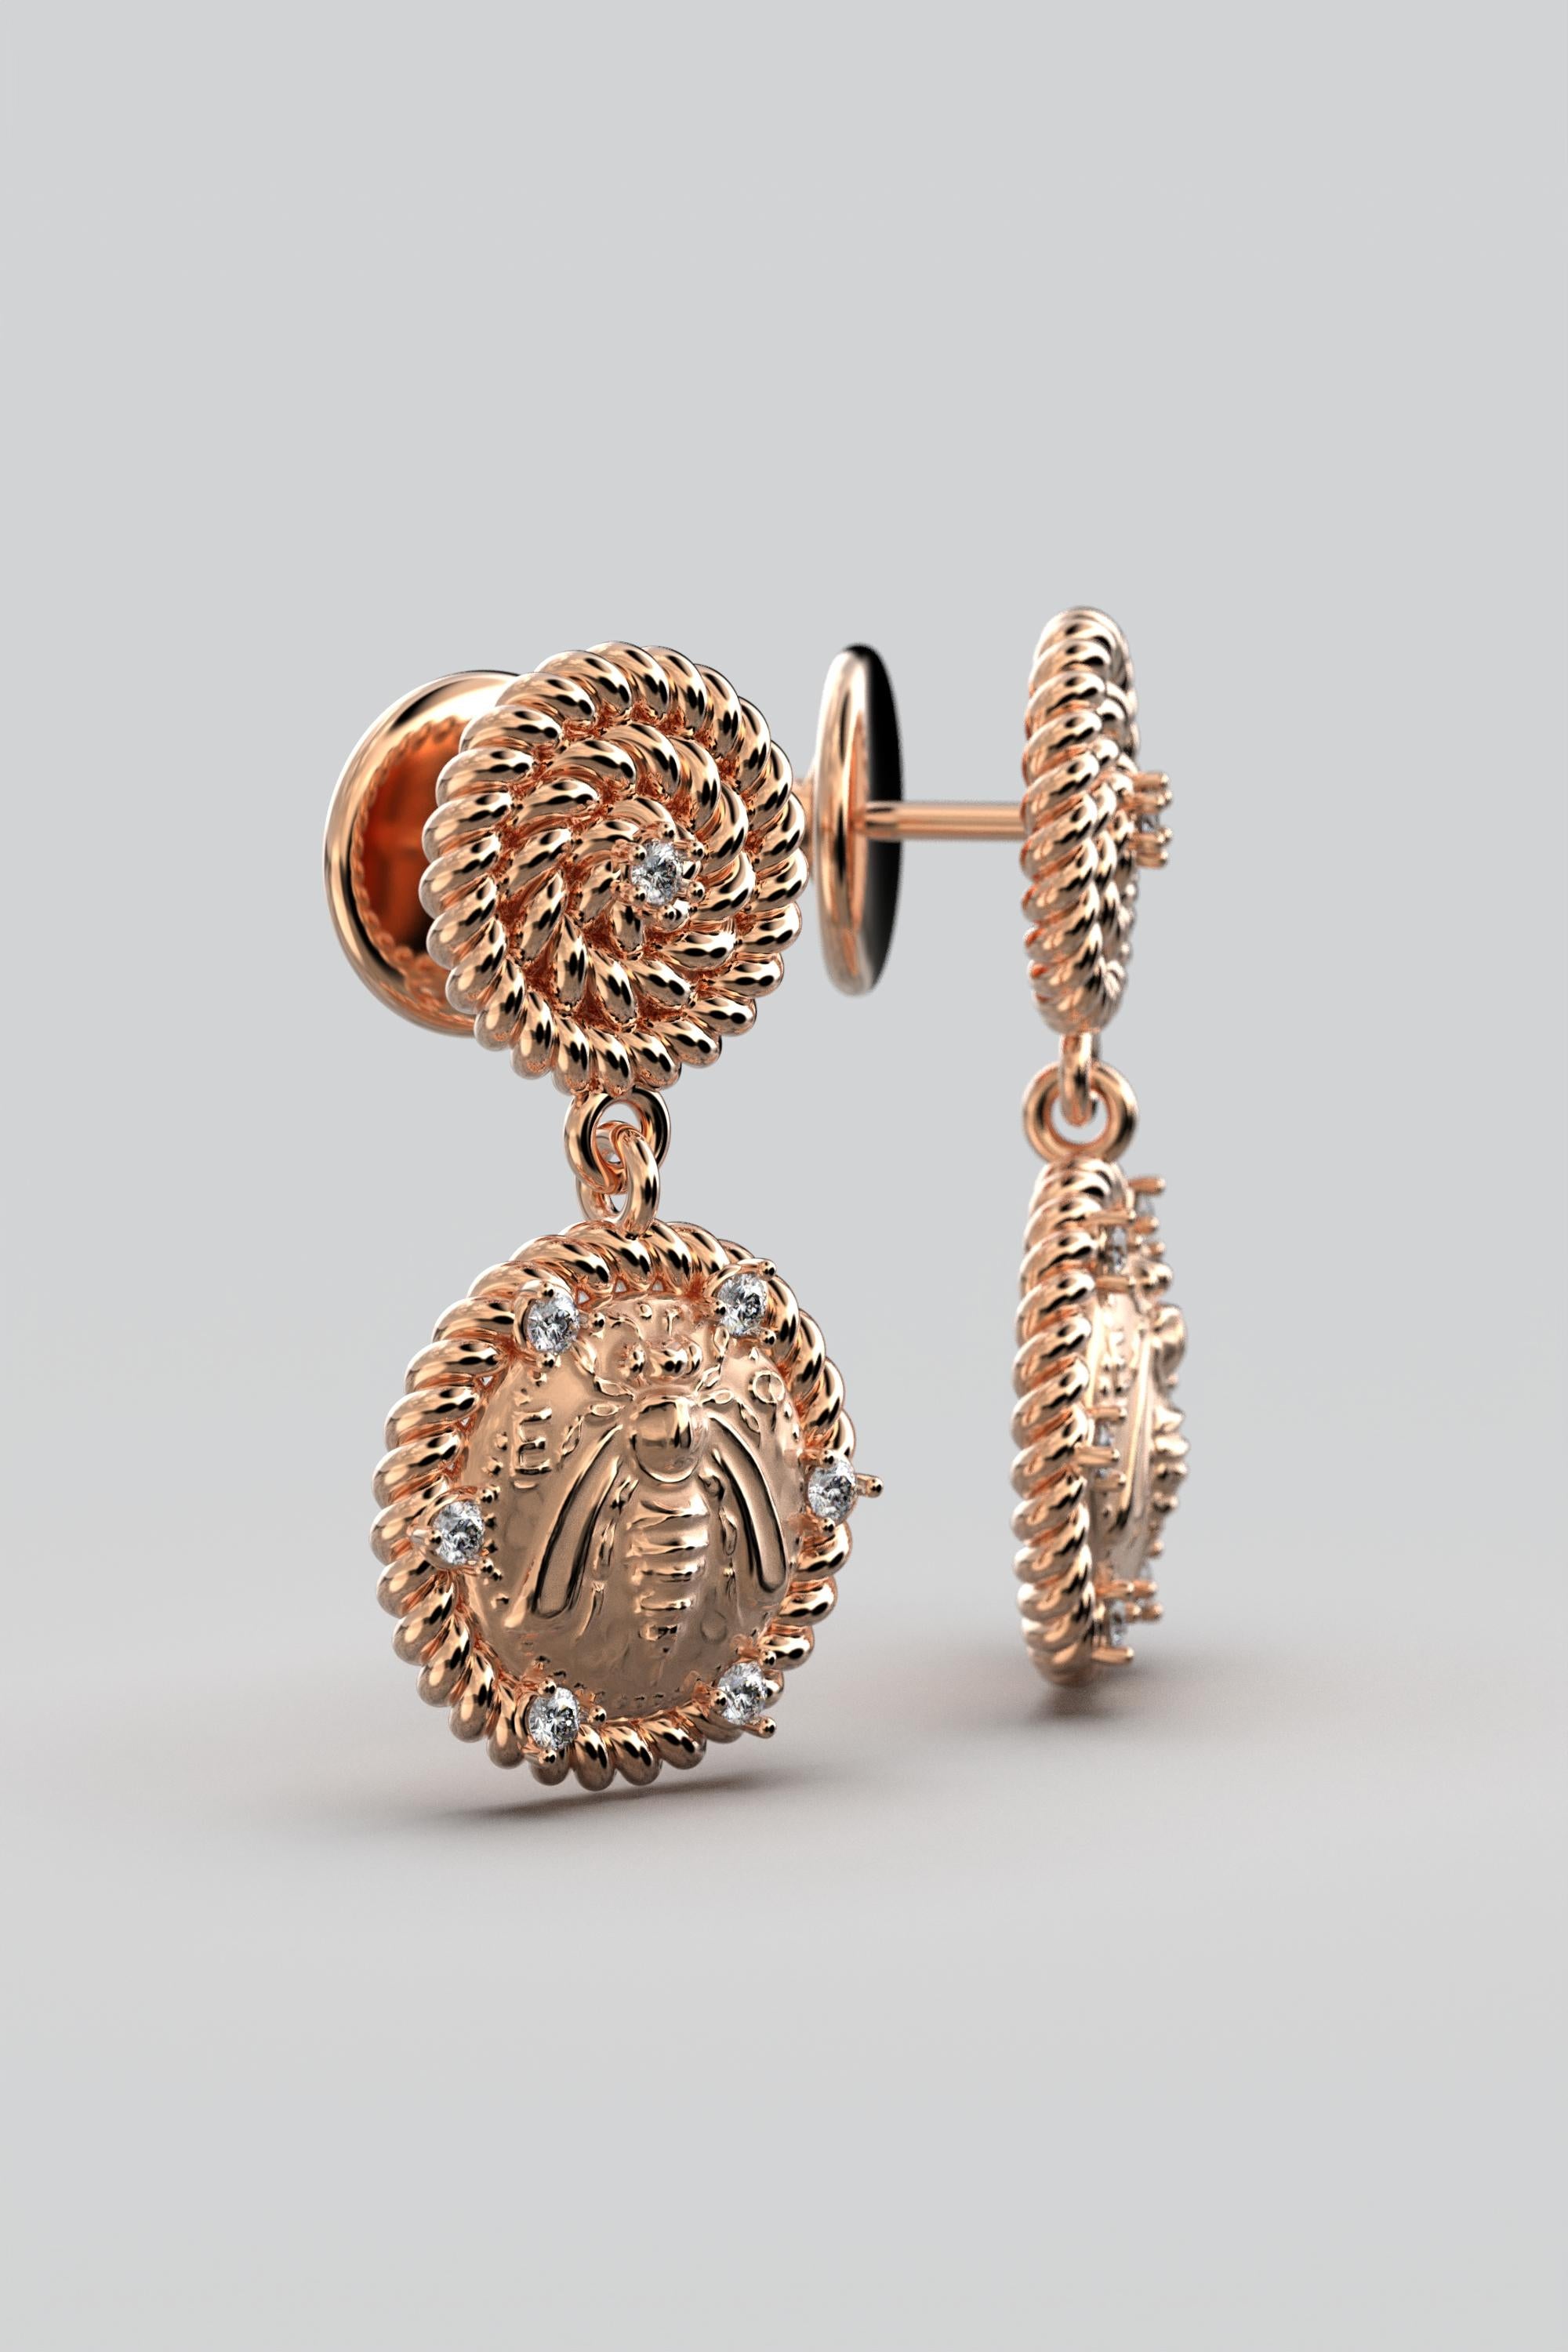 Italian Jewelry  14k Gold Dangle Earrings With Diamonds  Bee Earrings  For Sale 2